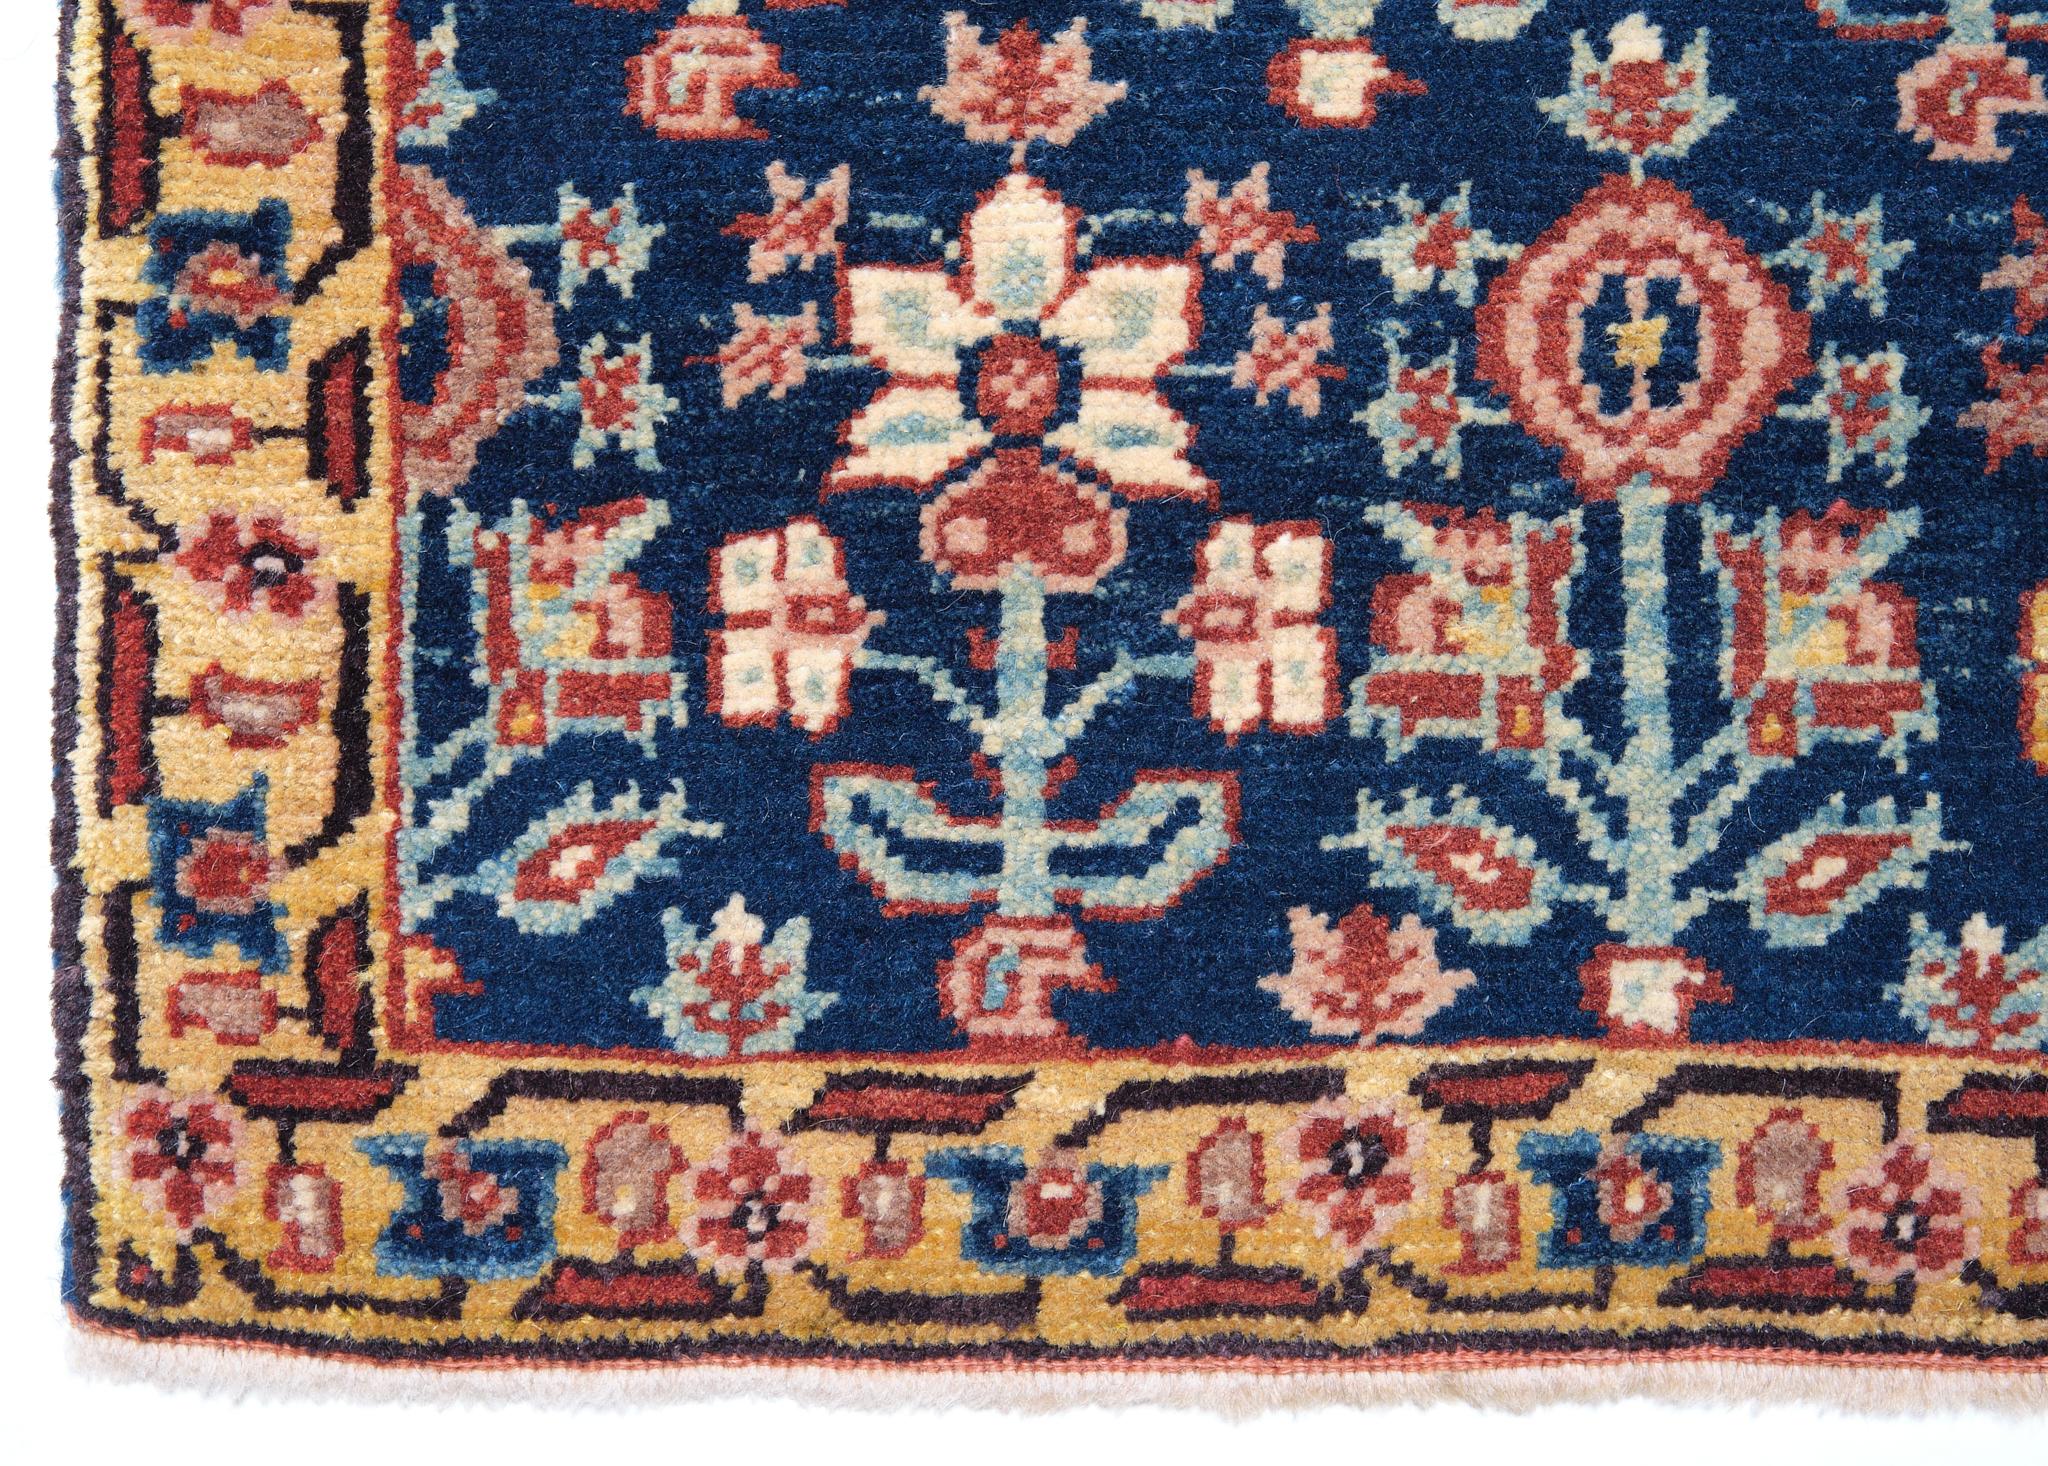 La source de ce tapis provient du livre Antique Rugs of Kurdistan A Historical Legacy of Woven Art, James D. Burns, 2002 nr.36. Il s'agit d'un exemple exclusif de tapis avec des rangées de fleurs ascendantes décalées, datant des années 1800 et